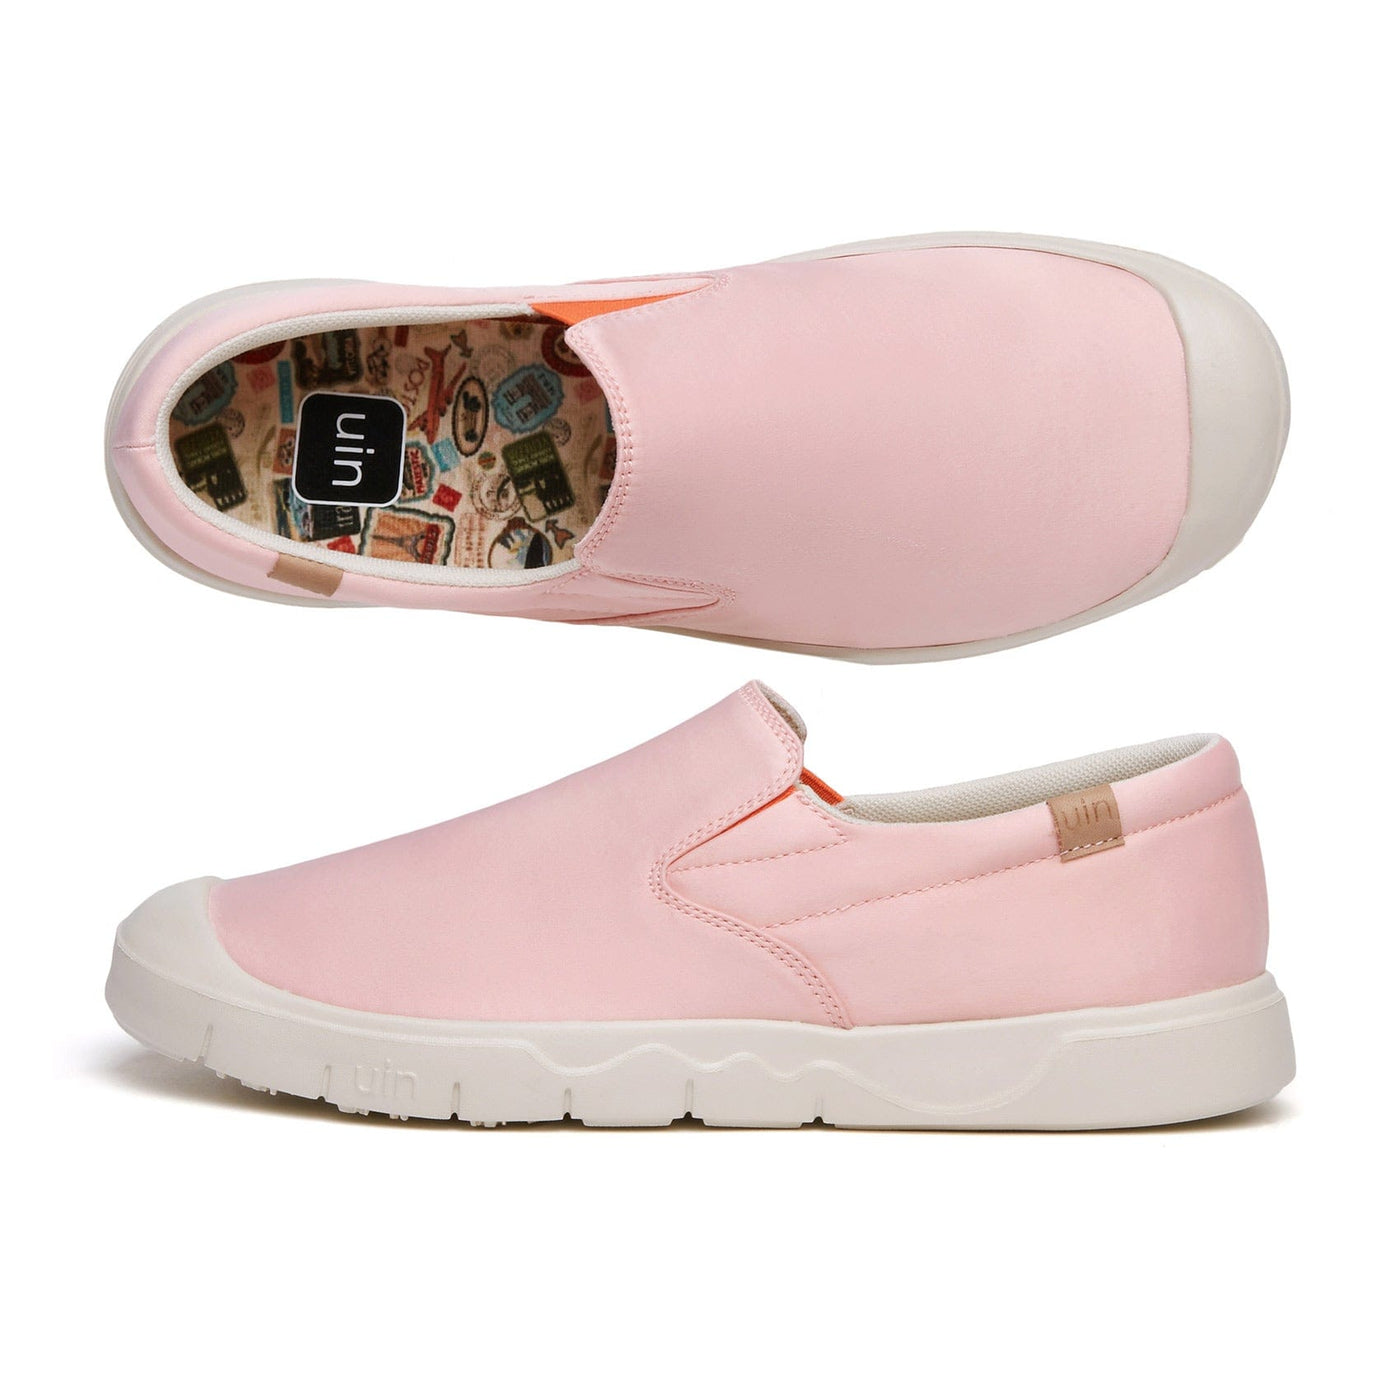 UIN Footwear Women Rosy Pink Cardiz I Women Canvas loafers